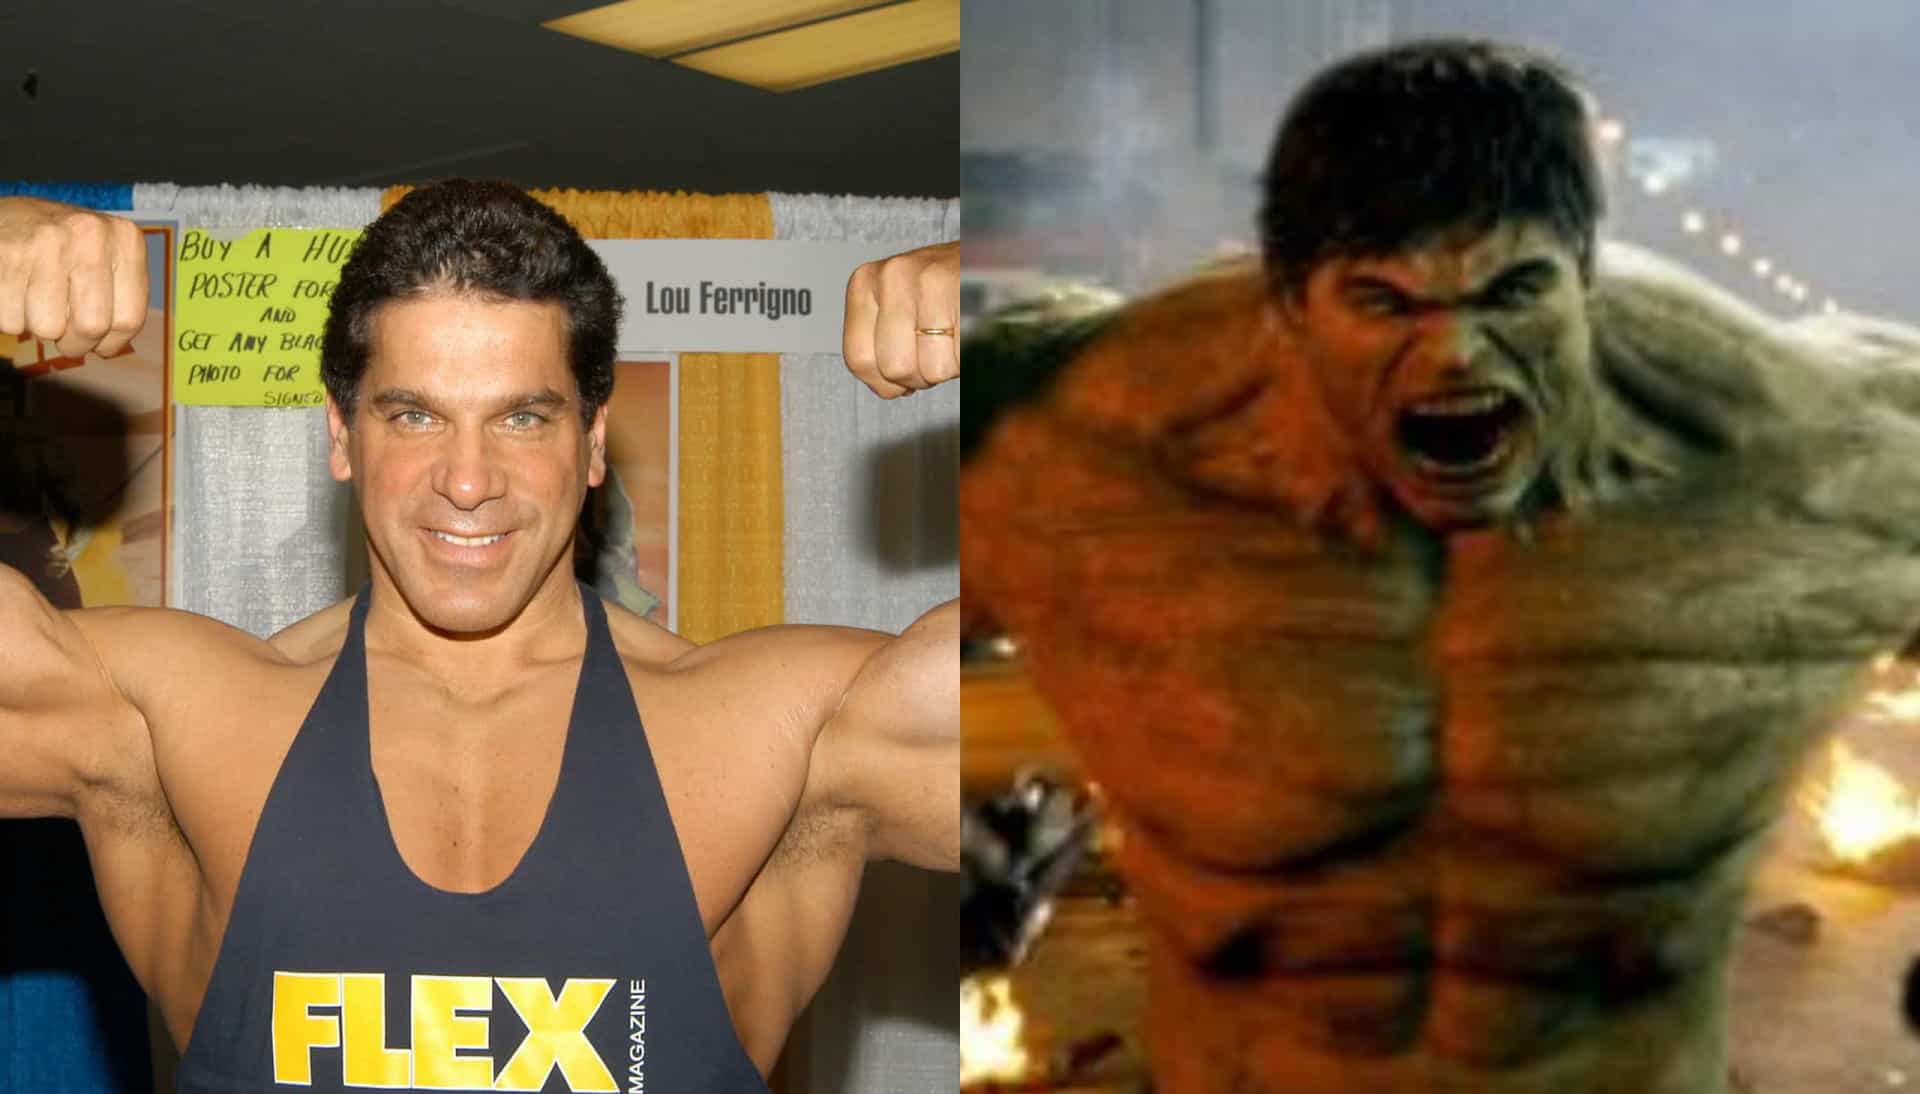 <p>Lou Ferrigno, que foi o Hulk na televisão no final dos anos 70 e início dos 80, dublou Hulk em 'O Incrível Hulk' (2008), 'Os Vingadores' (2012) e 'Vingadores: Era de Ultron' (2015).</p>